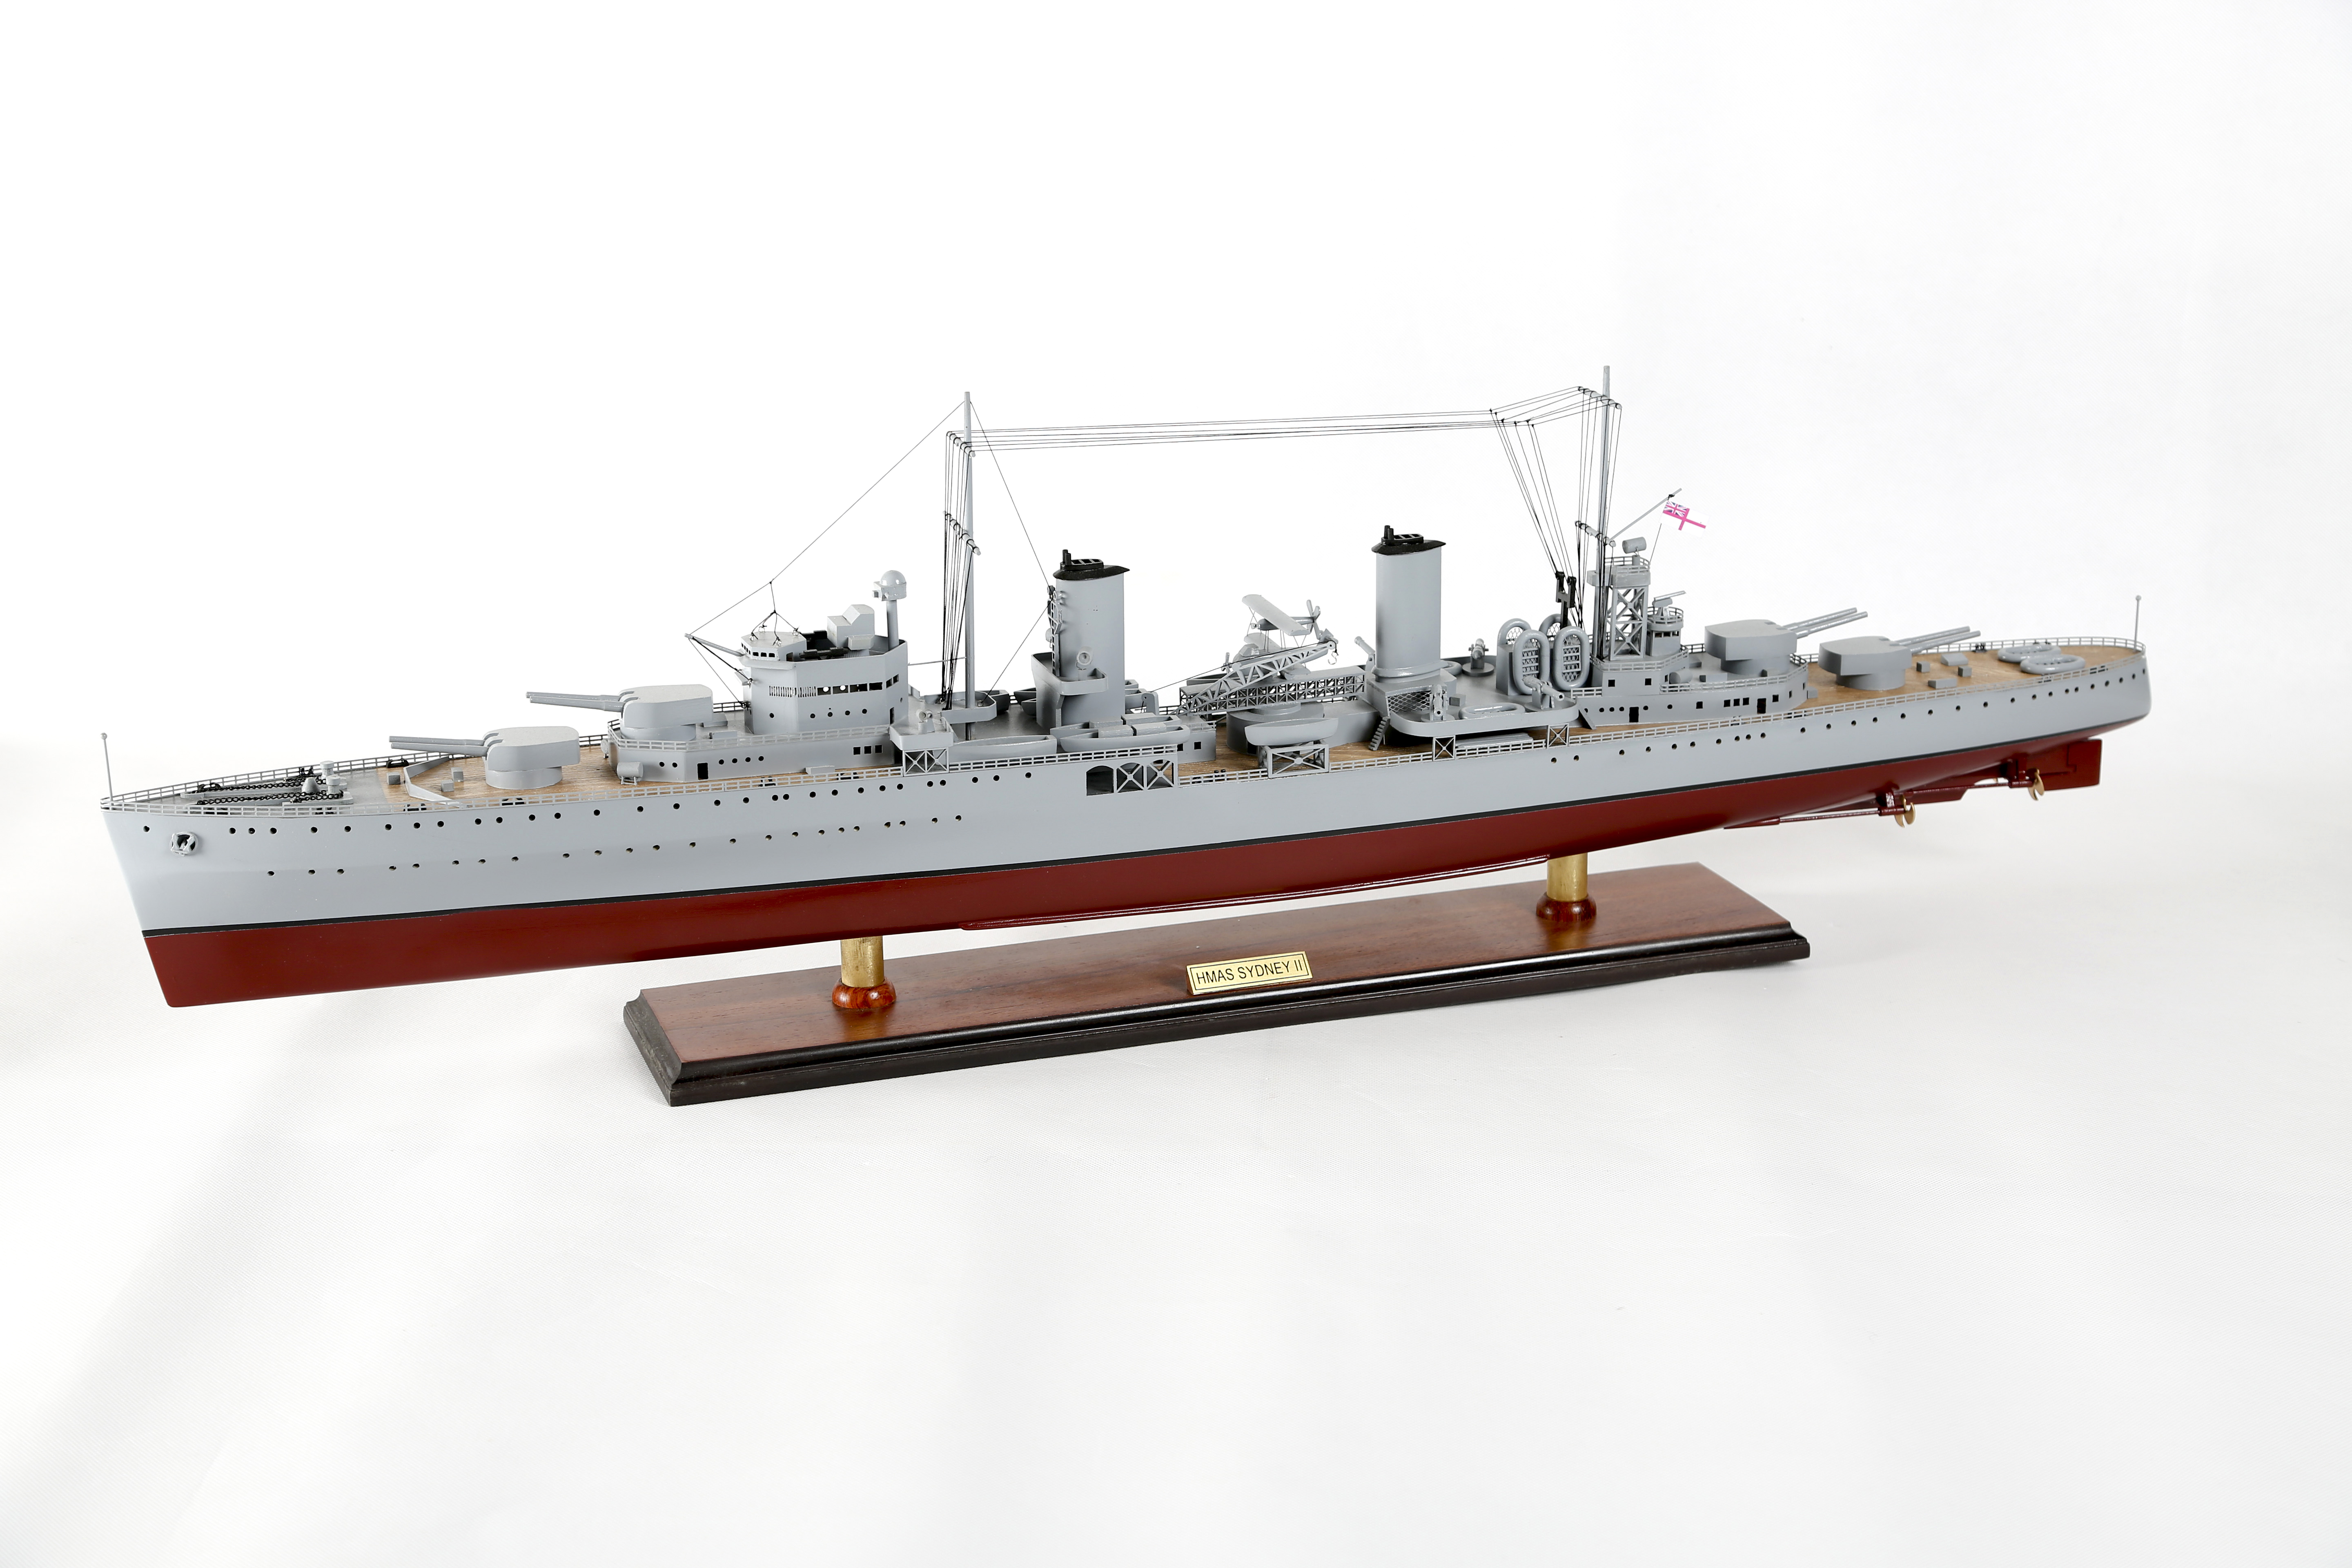 HMAS Sydney Cruiser model replica ship. Model Navy ship